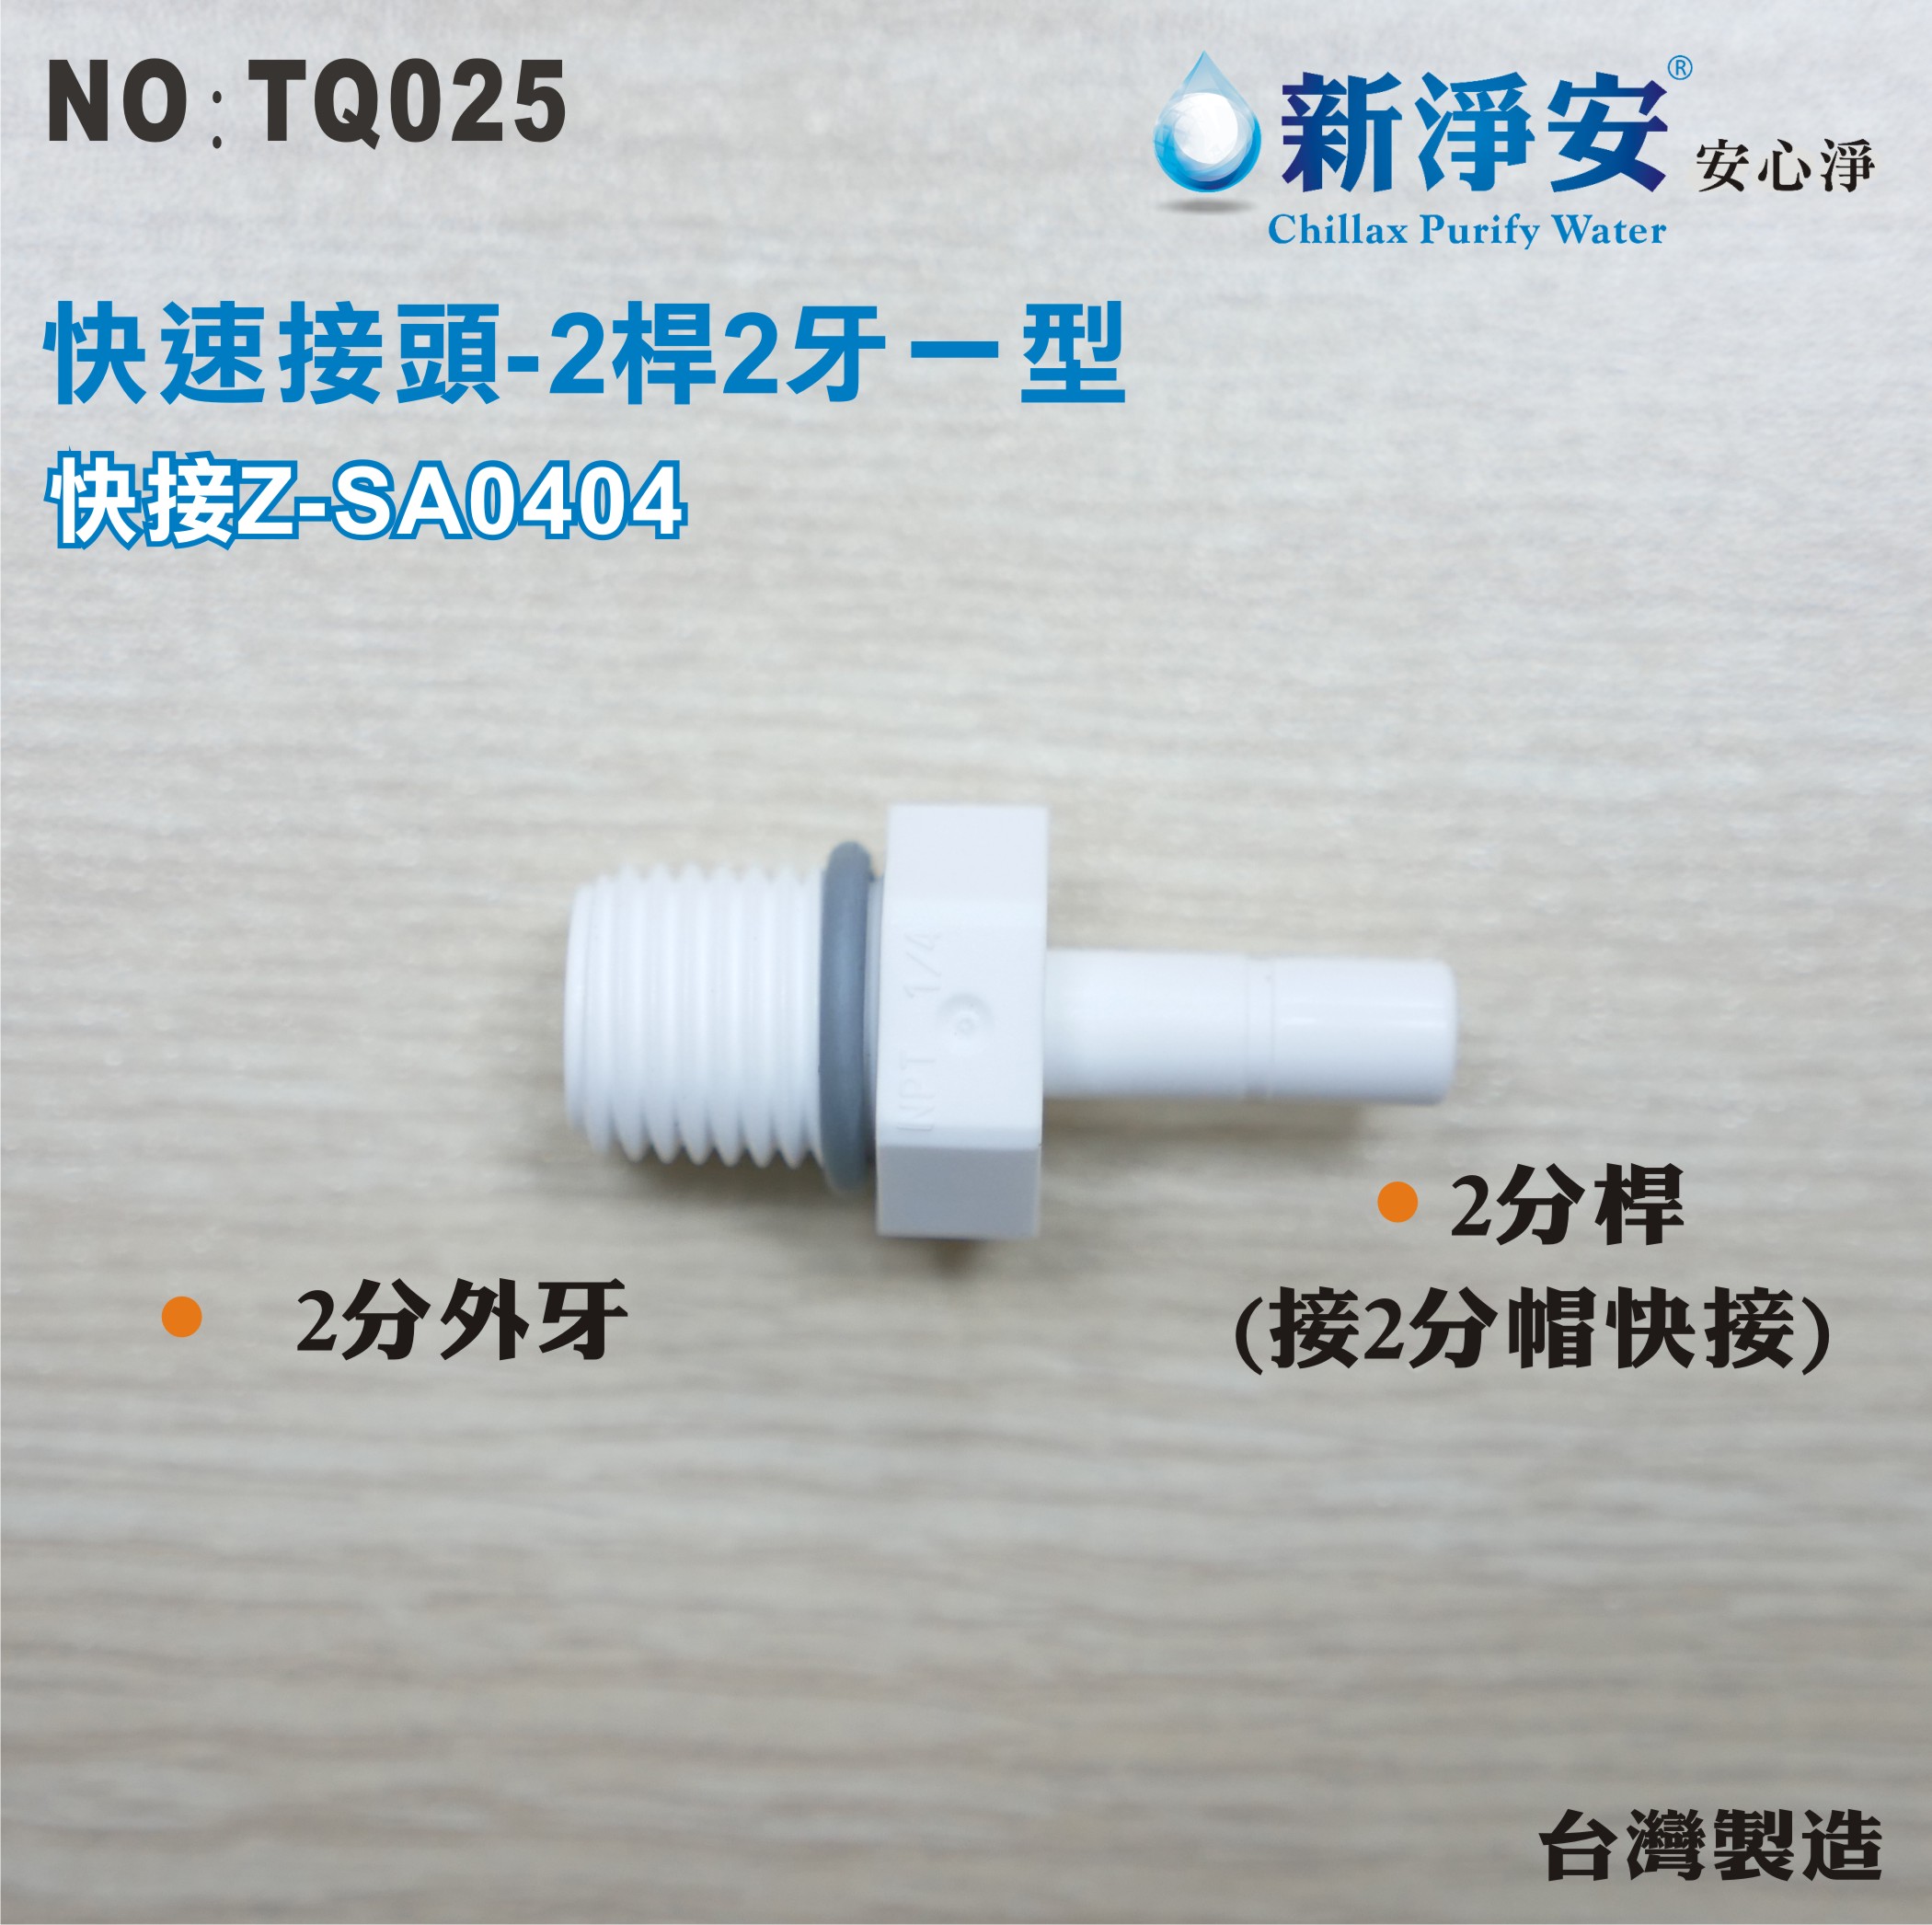 【龍門淨水】快速接頭 Z-SA0404 2分桿-2分外牙一型接頭 2桿2牙直塑膠接頭 台灣製造 直購價25元(TQ025)